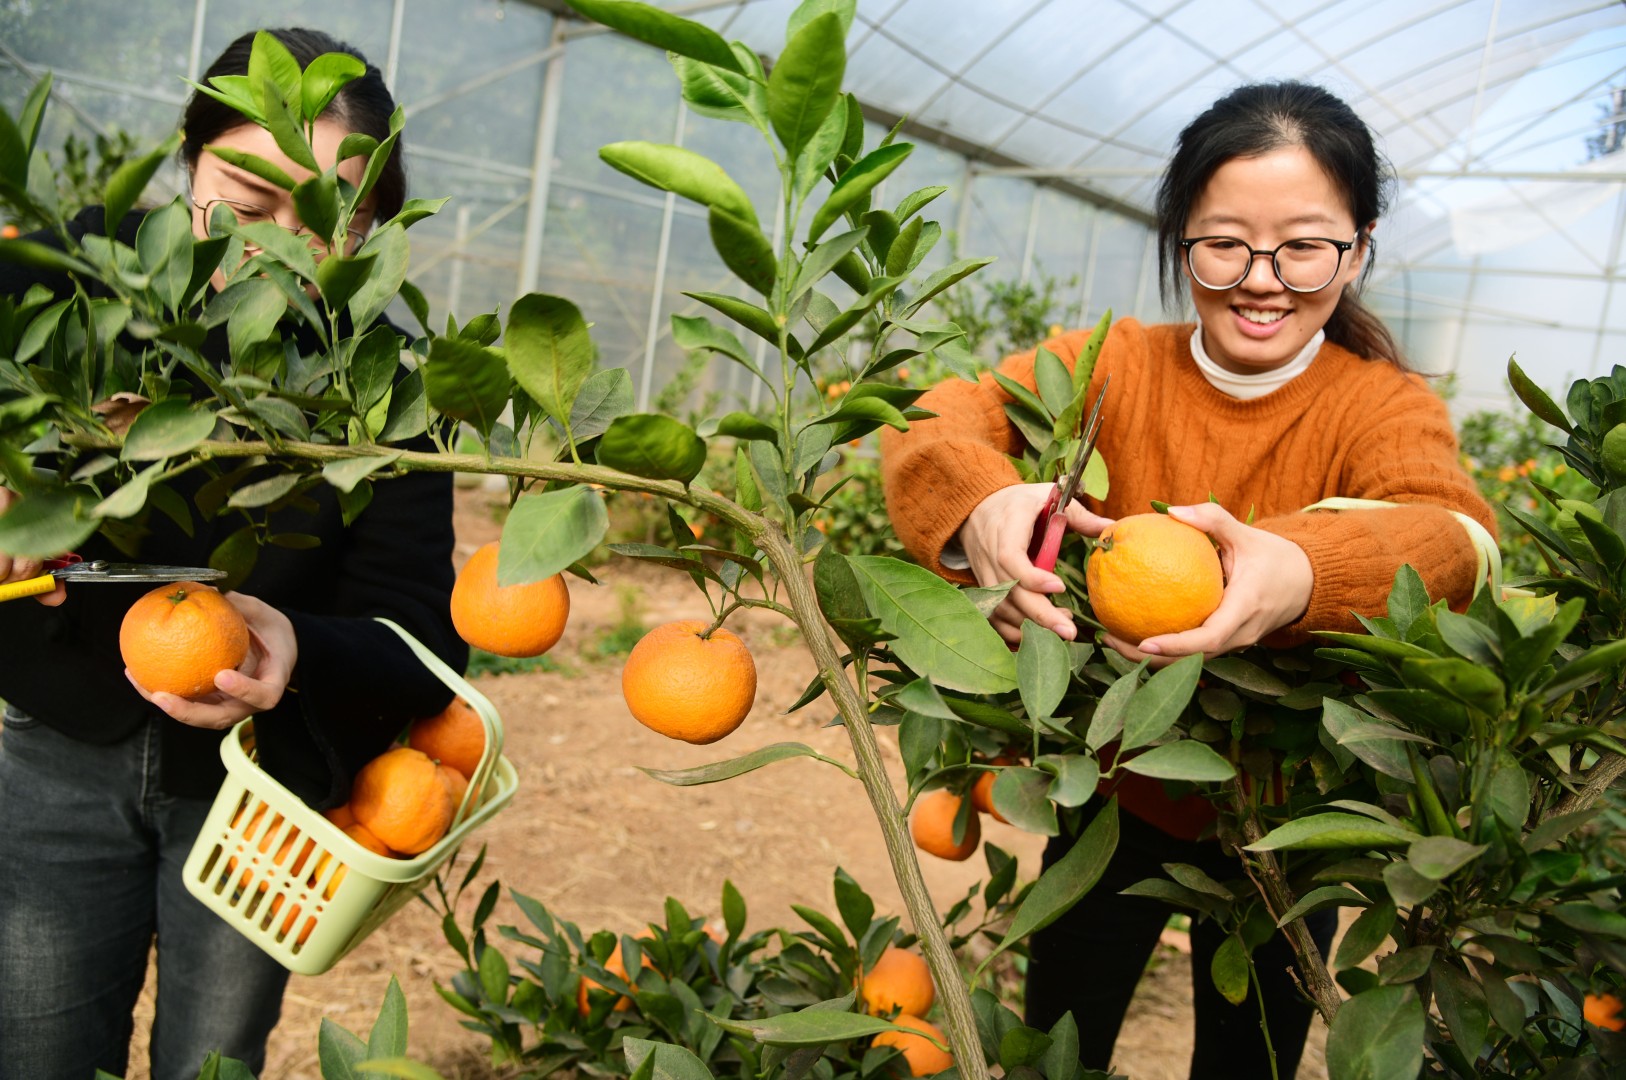 2022年11月16日，镇江市回龙社区，市民正在果园里采摘成熟的橘子。目前，回龙社区果园里栽种的橘子进入采收期，吸引市民前来采摘成熟的橘子，感受收获的喜悦。 石玉成 摄 视觉江苏网供图